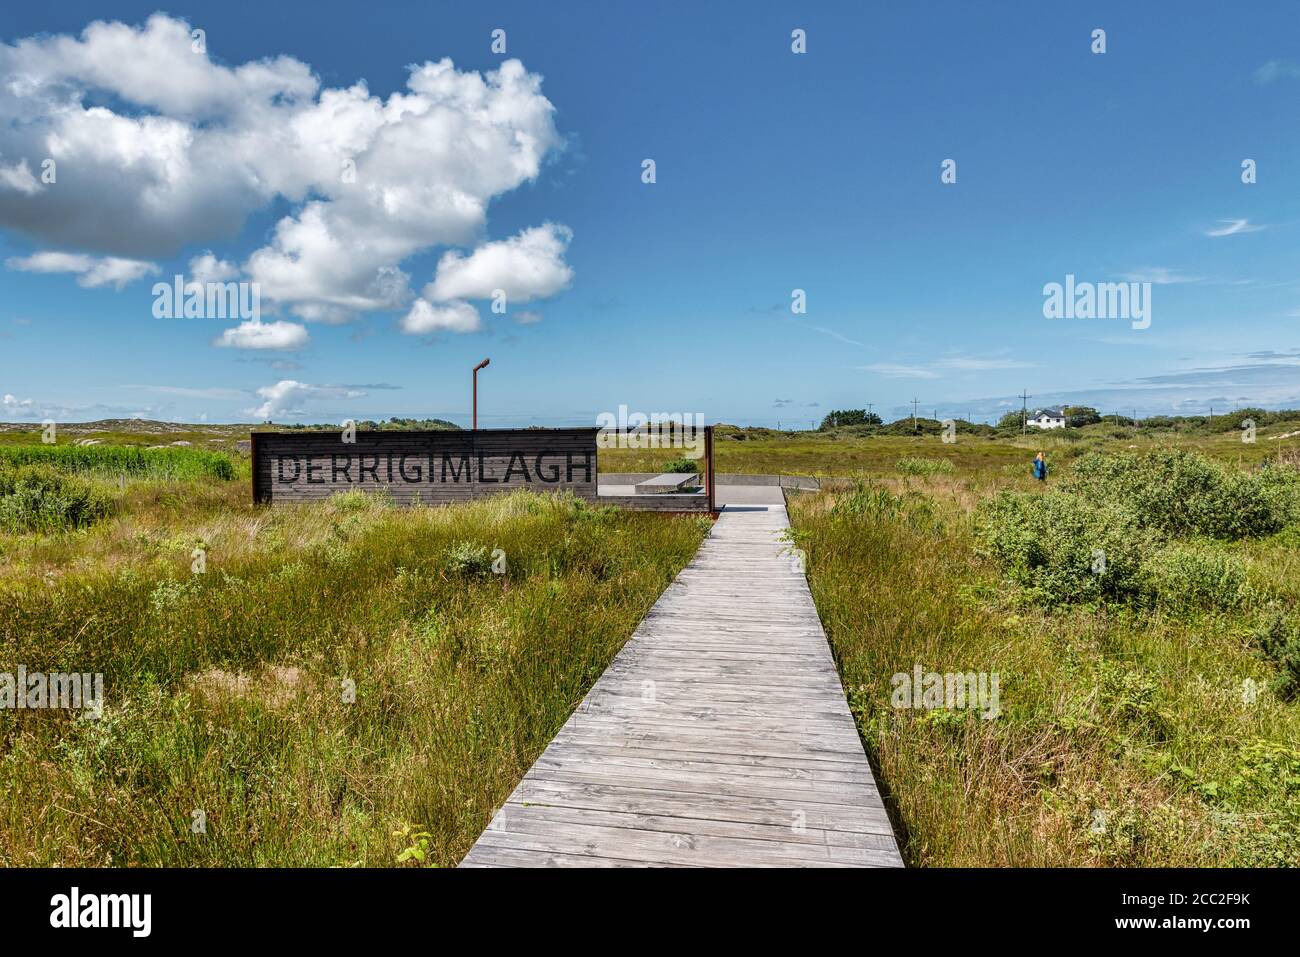 Derrigimlagh, Irland - 20. Jul 2020: Der Derrigimlagh Wild Atlantic Way Aussichtspunkt Stockfoto